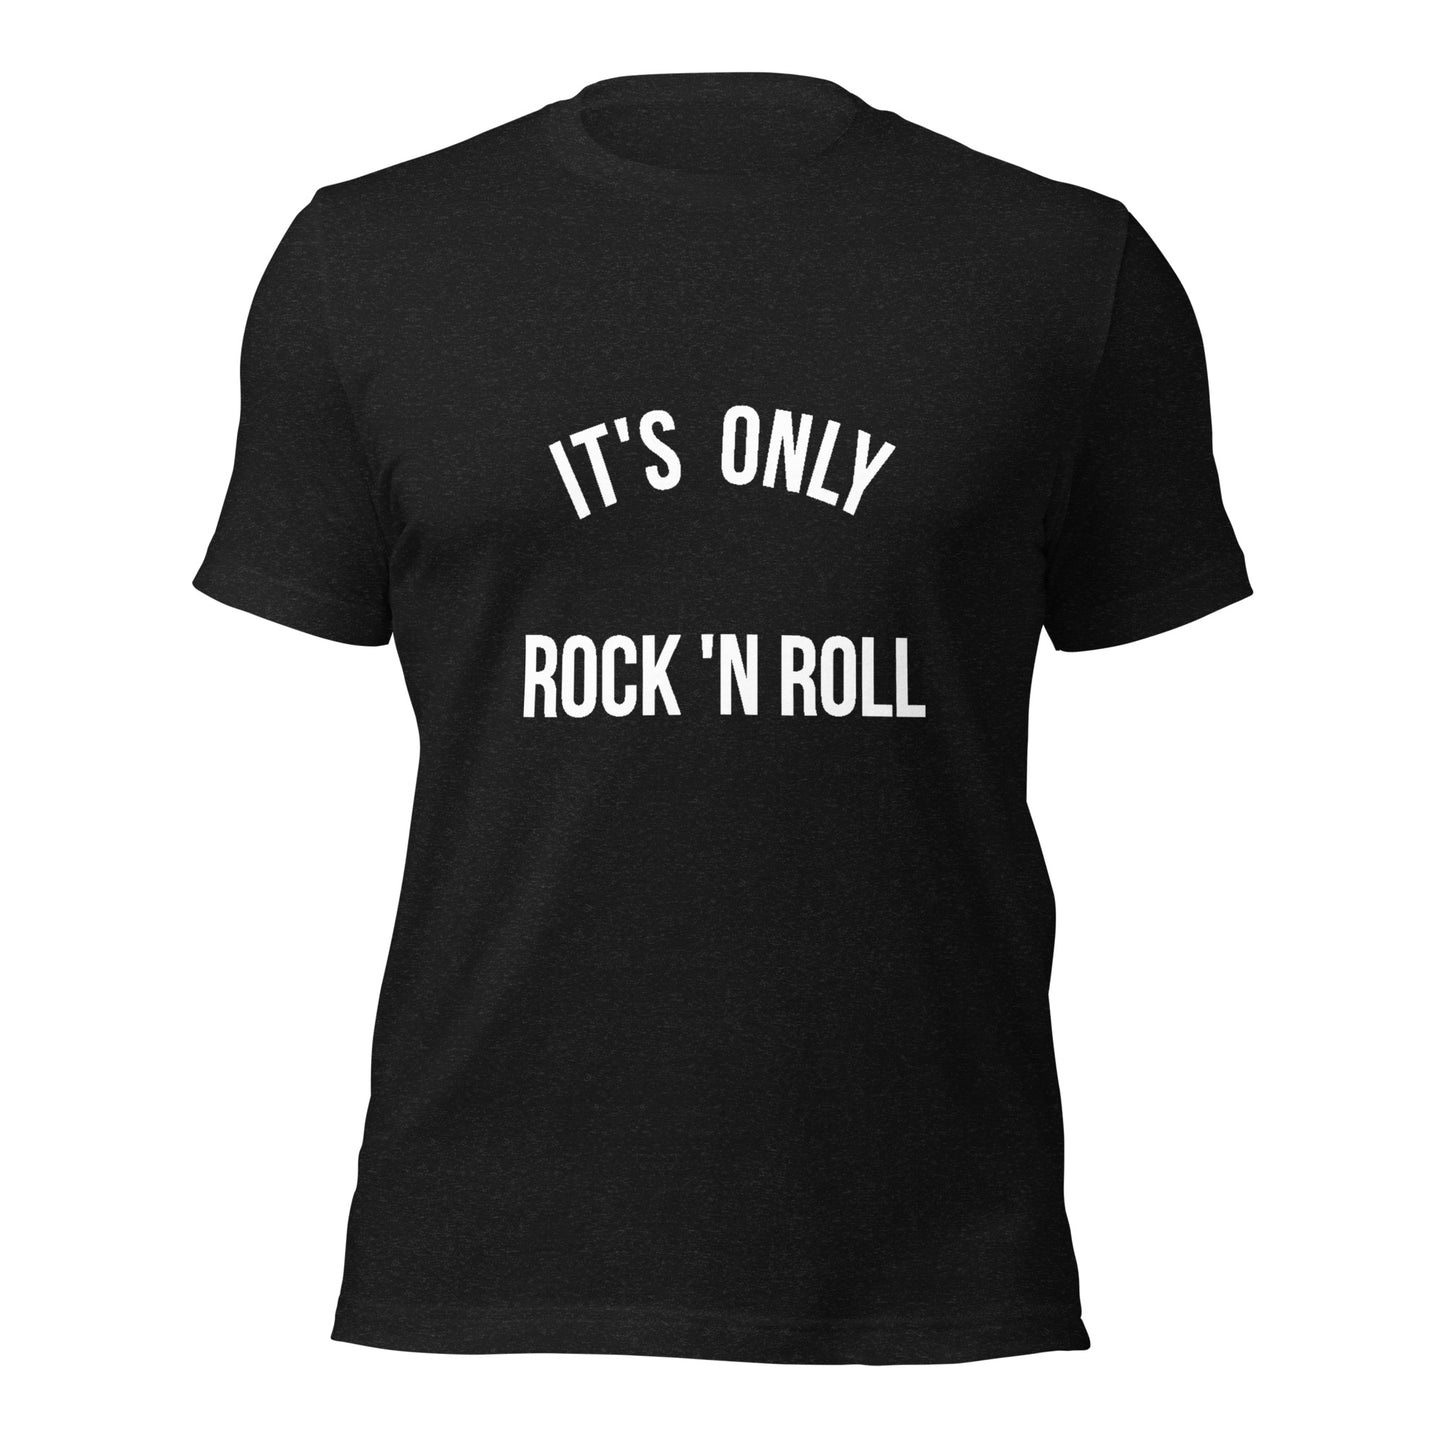 It's only ROCKNROLL Women round neck black T-Shirt